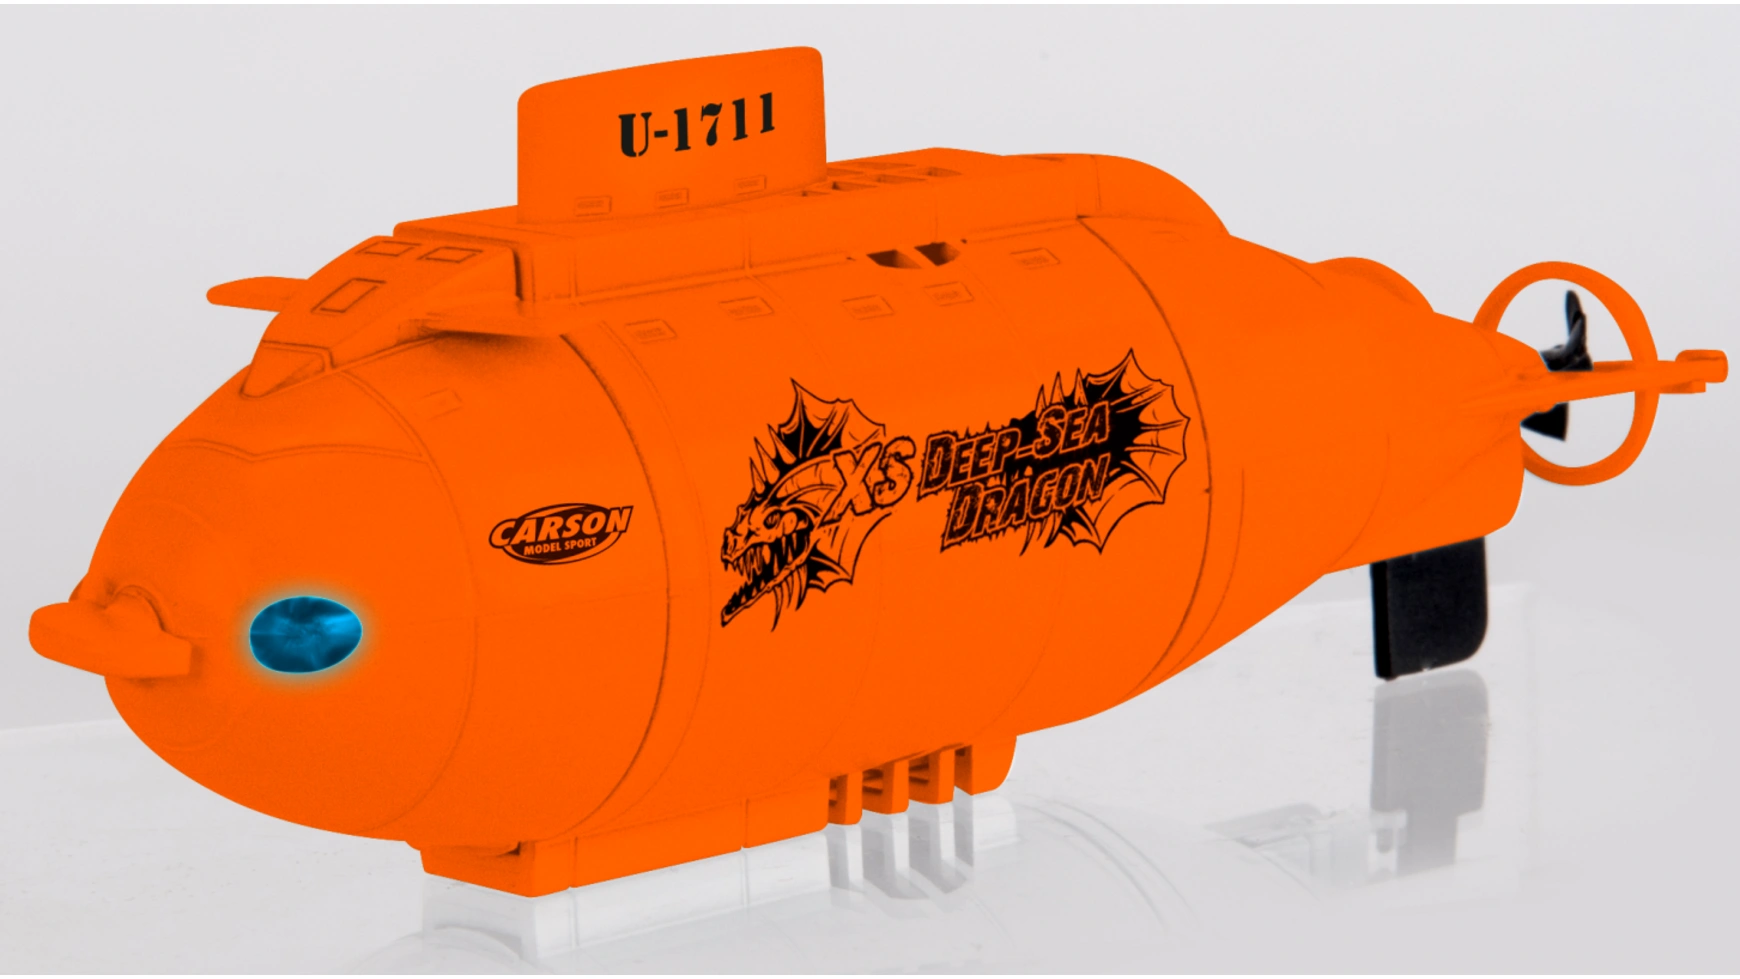 Carson Радиоуправляемая подводная лодка XS Deep Sea Dragon 100% RTR игрушка для игры в ванне подводная лодка